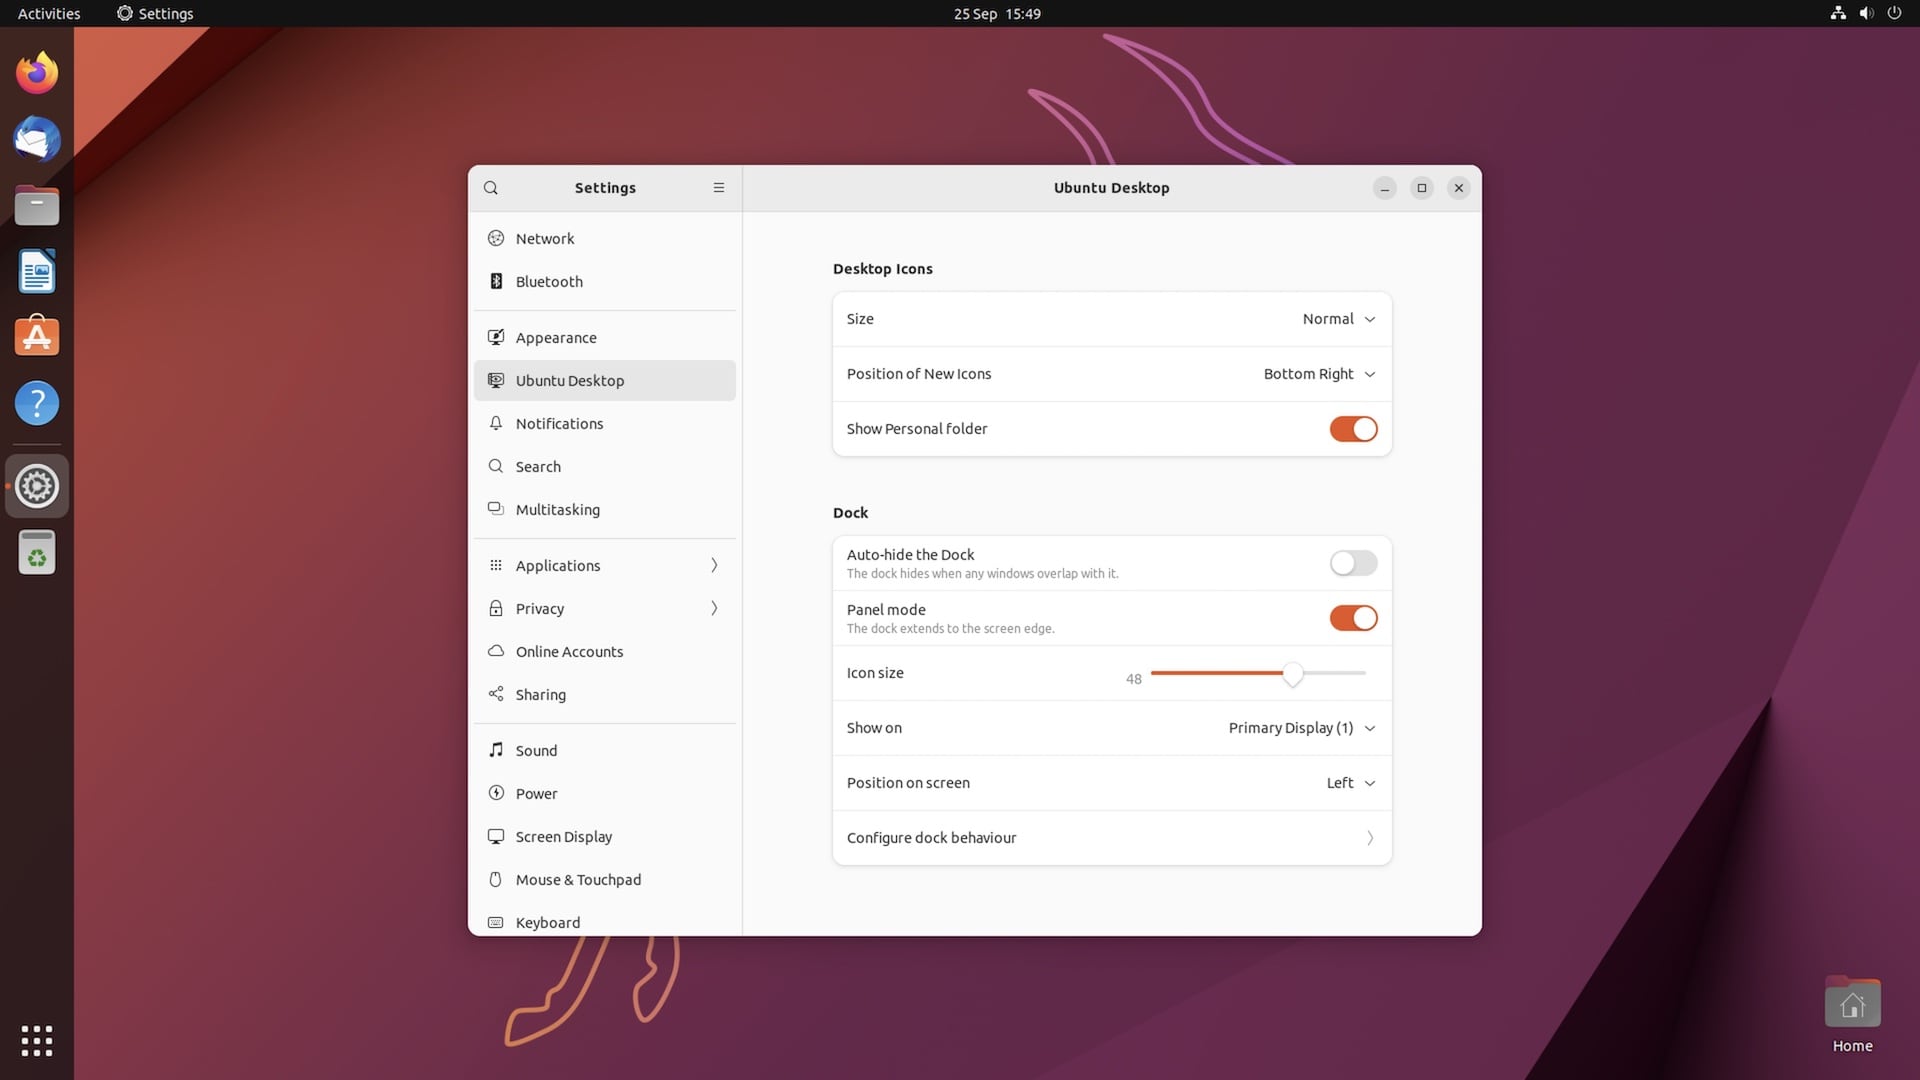 nvidia - Ubuntu screen keeps freezing randomly - Ask Ubuntu